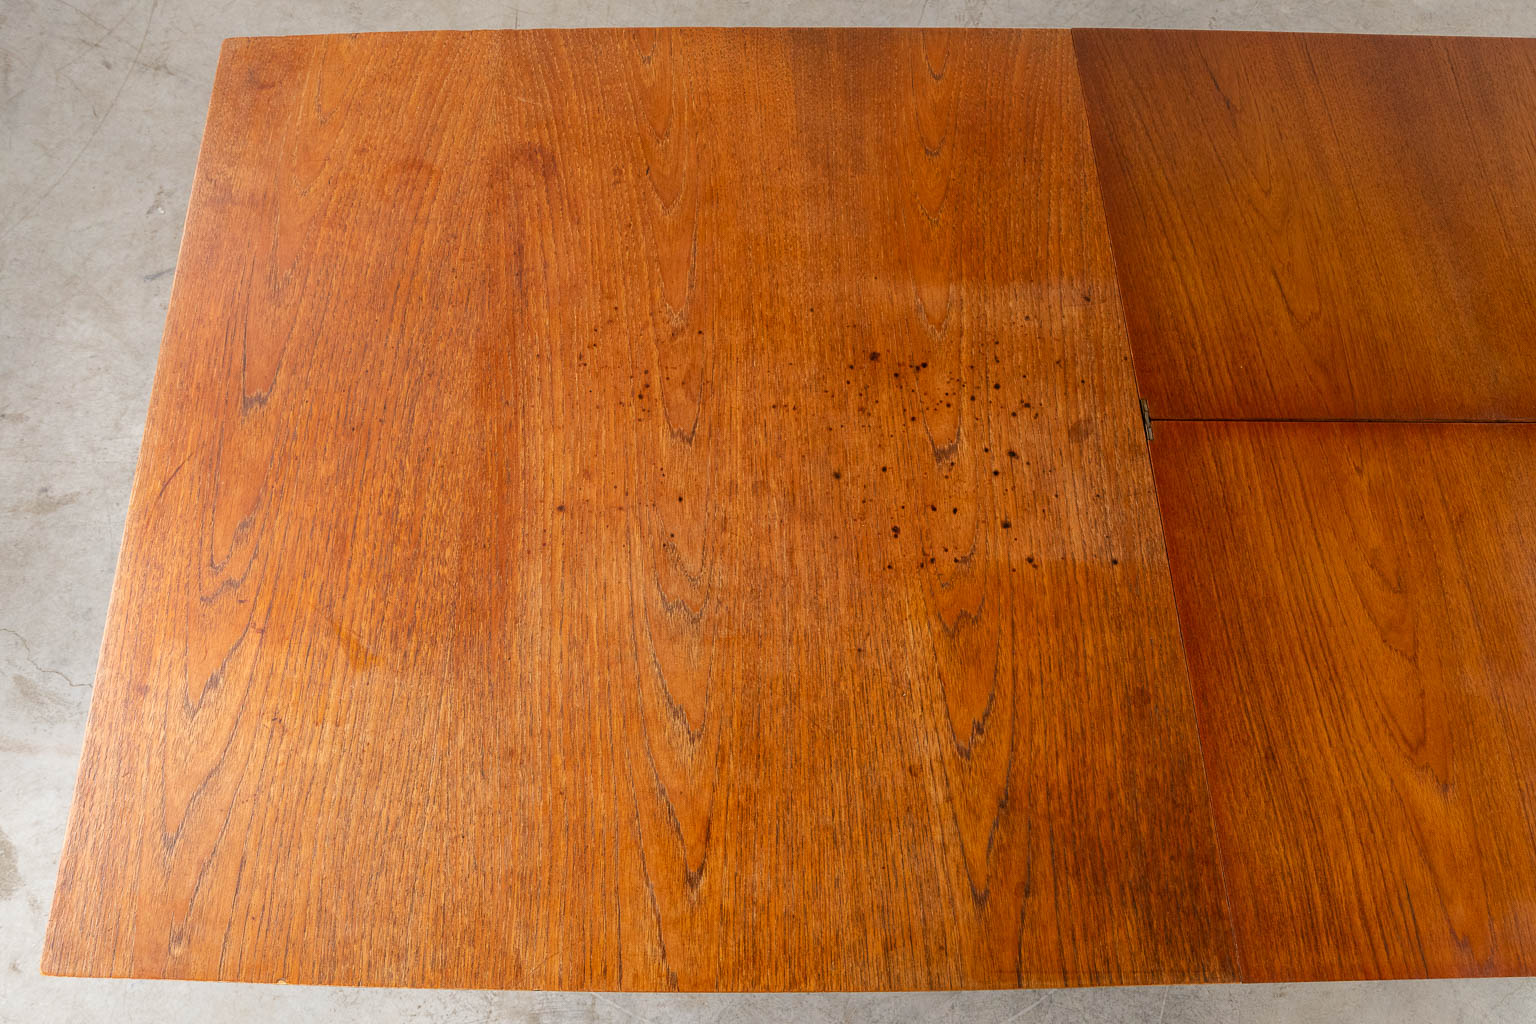 Een mid-century tafel en 6 stoelen, riet en metaal, hout. Circa 1960. (D:86 x W:160 x H:76 cm)